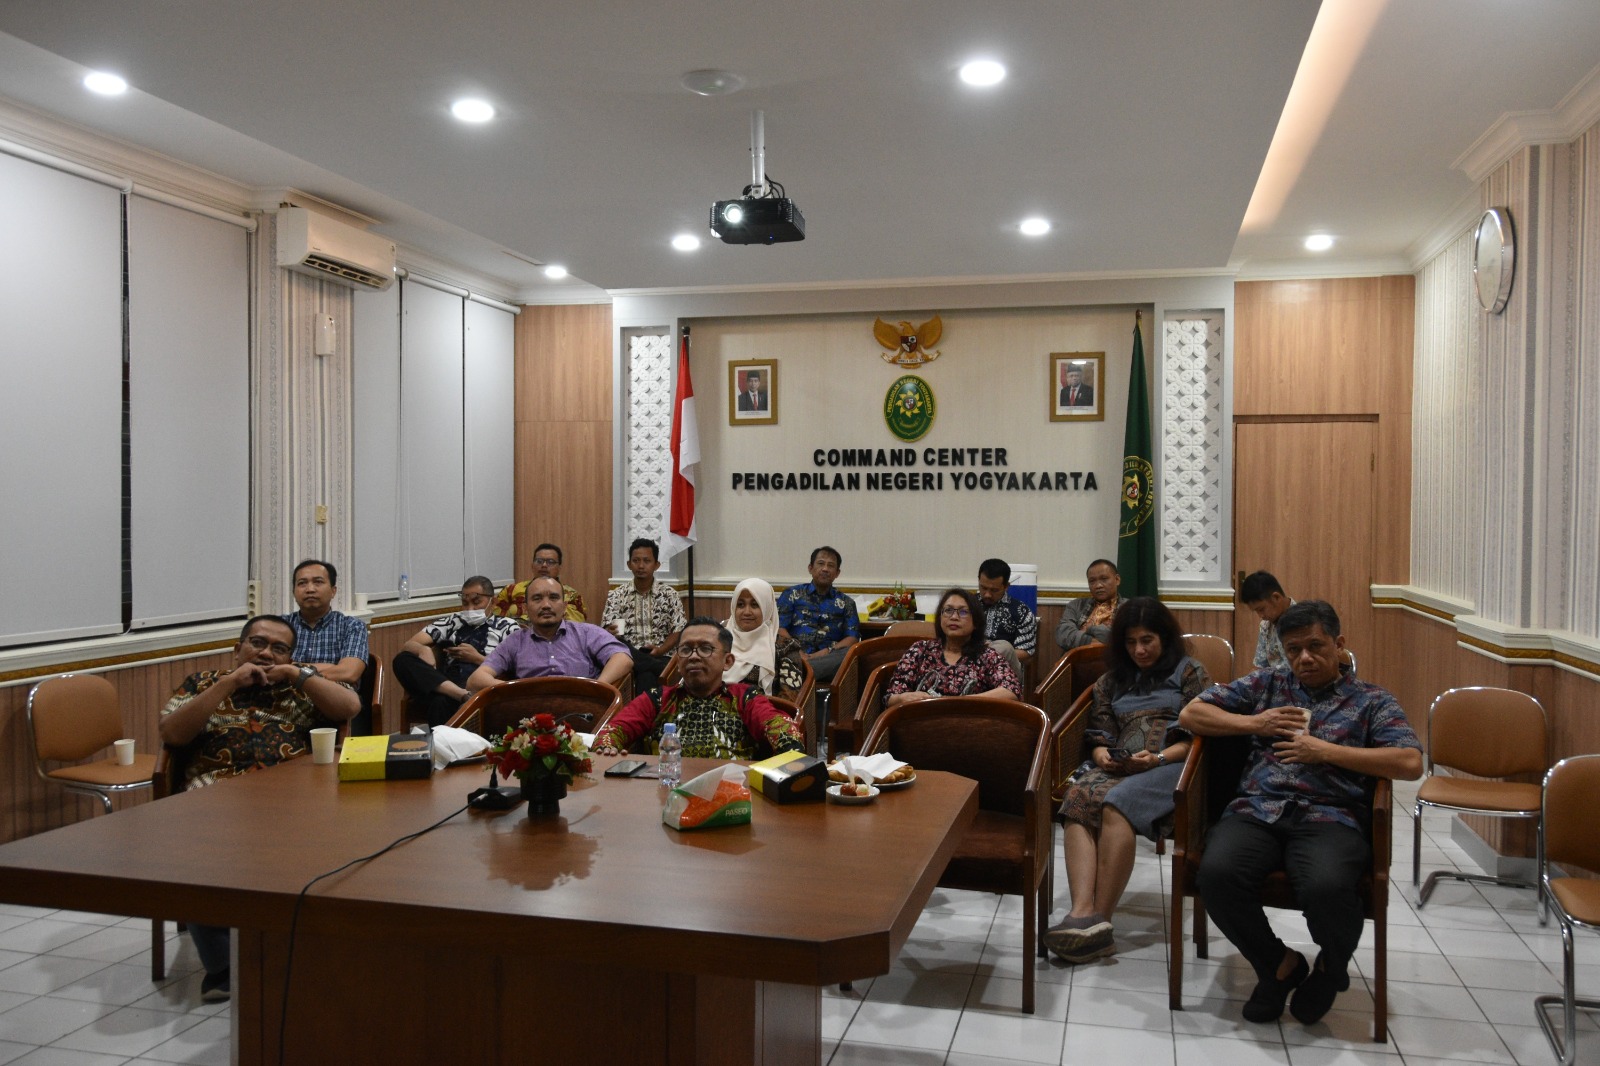 Pengadilan Negeri Yogyakarta Menonton bersama Pagelaran Wayang Kulit dalam Rangka Memperingati HUT Mahkamah Agung RI ke-78